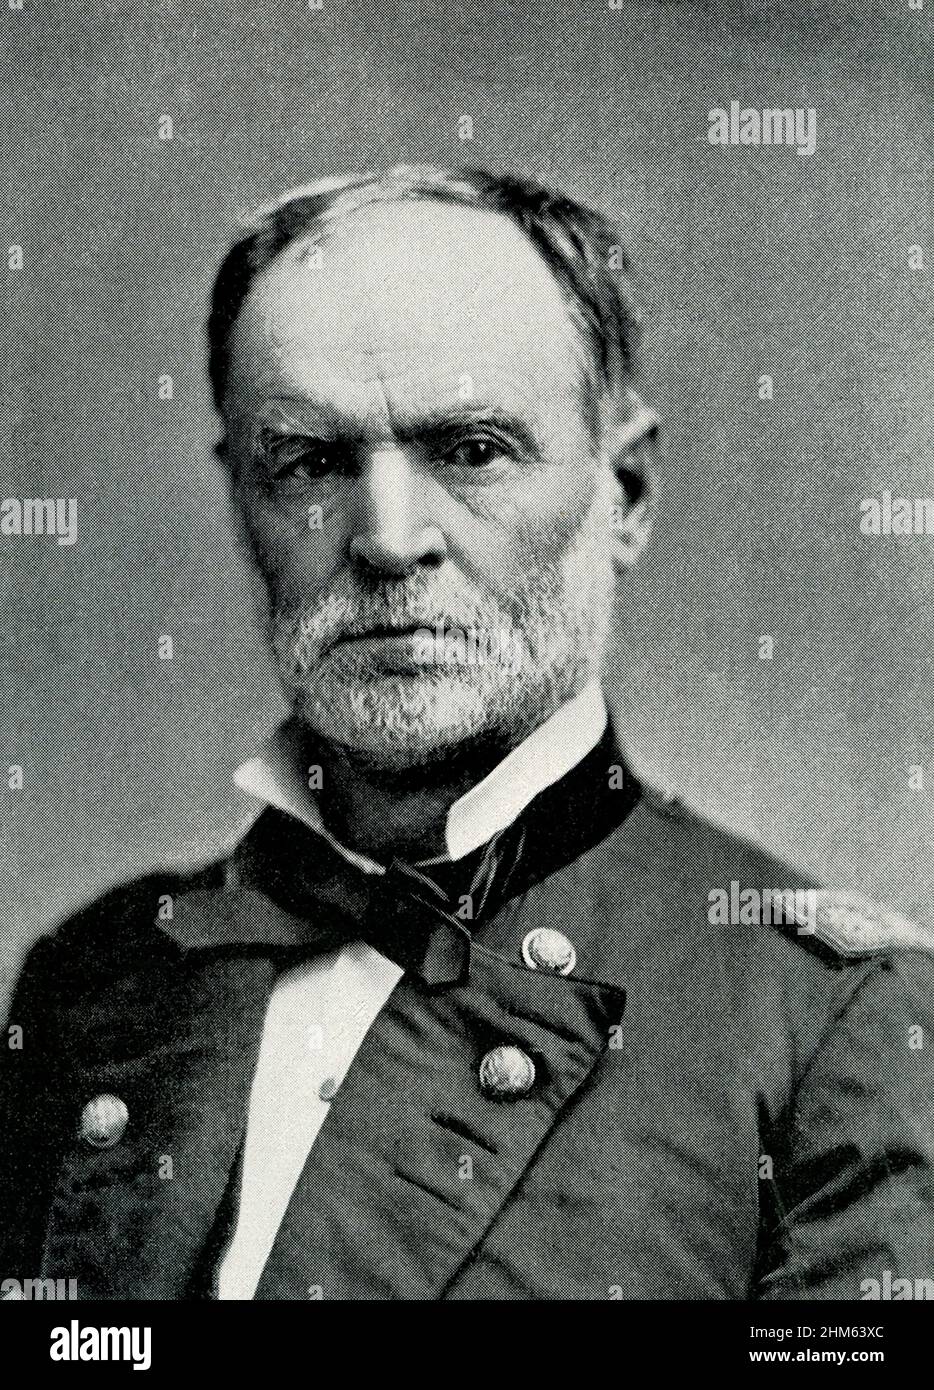 William Tecumseh Sherman (1820-1891) è stato un generale della Guerra civile americana e un architetto di grande rilievo della guerra moderna. Ha guidato le forze dell'Unione in campagne schiaccianti attraverso il sud, marciando attraverso la Georgia e le Carolinas (1864-65). Foto Stock